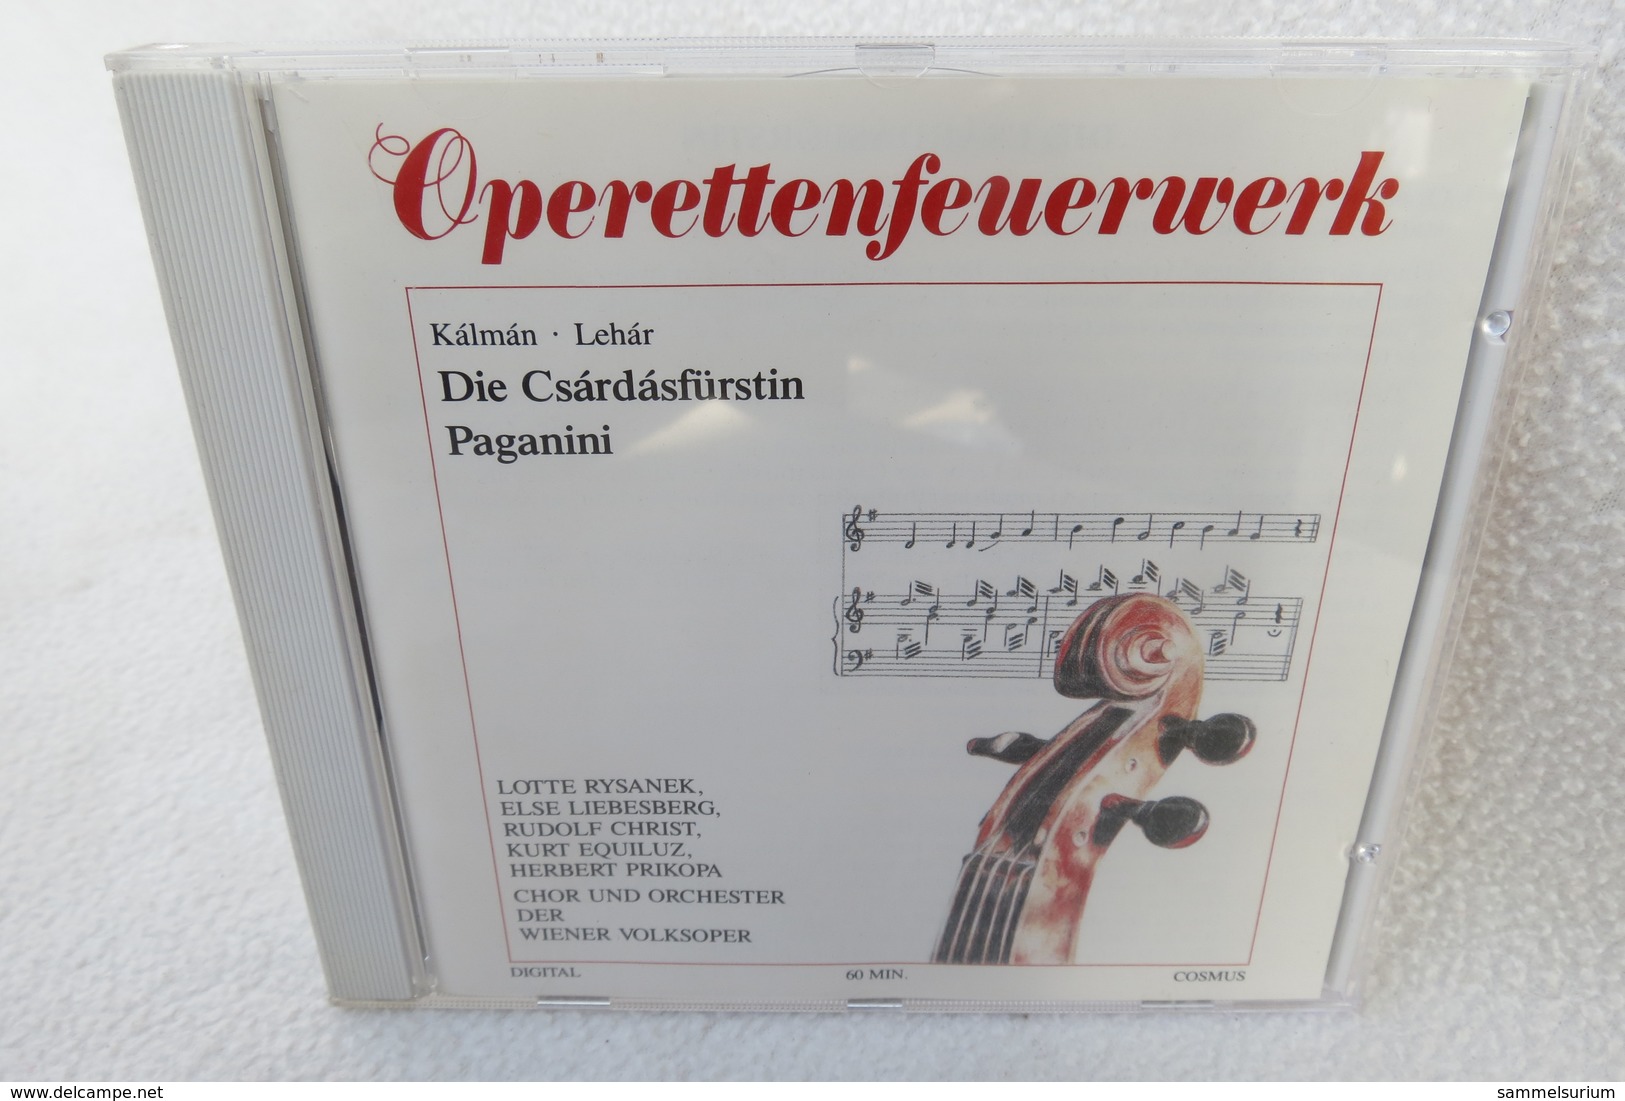 CD "Operettenfeuerwerk" Kálmán, Lehár - Opere